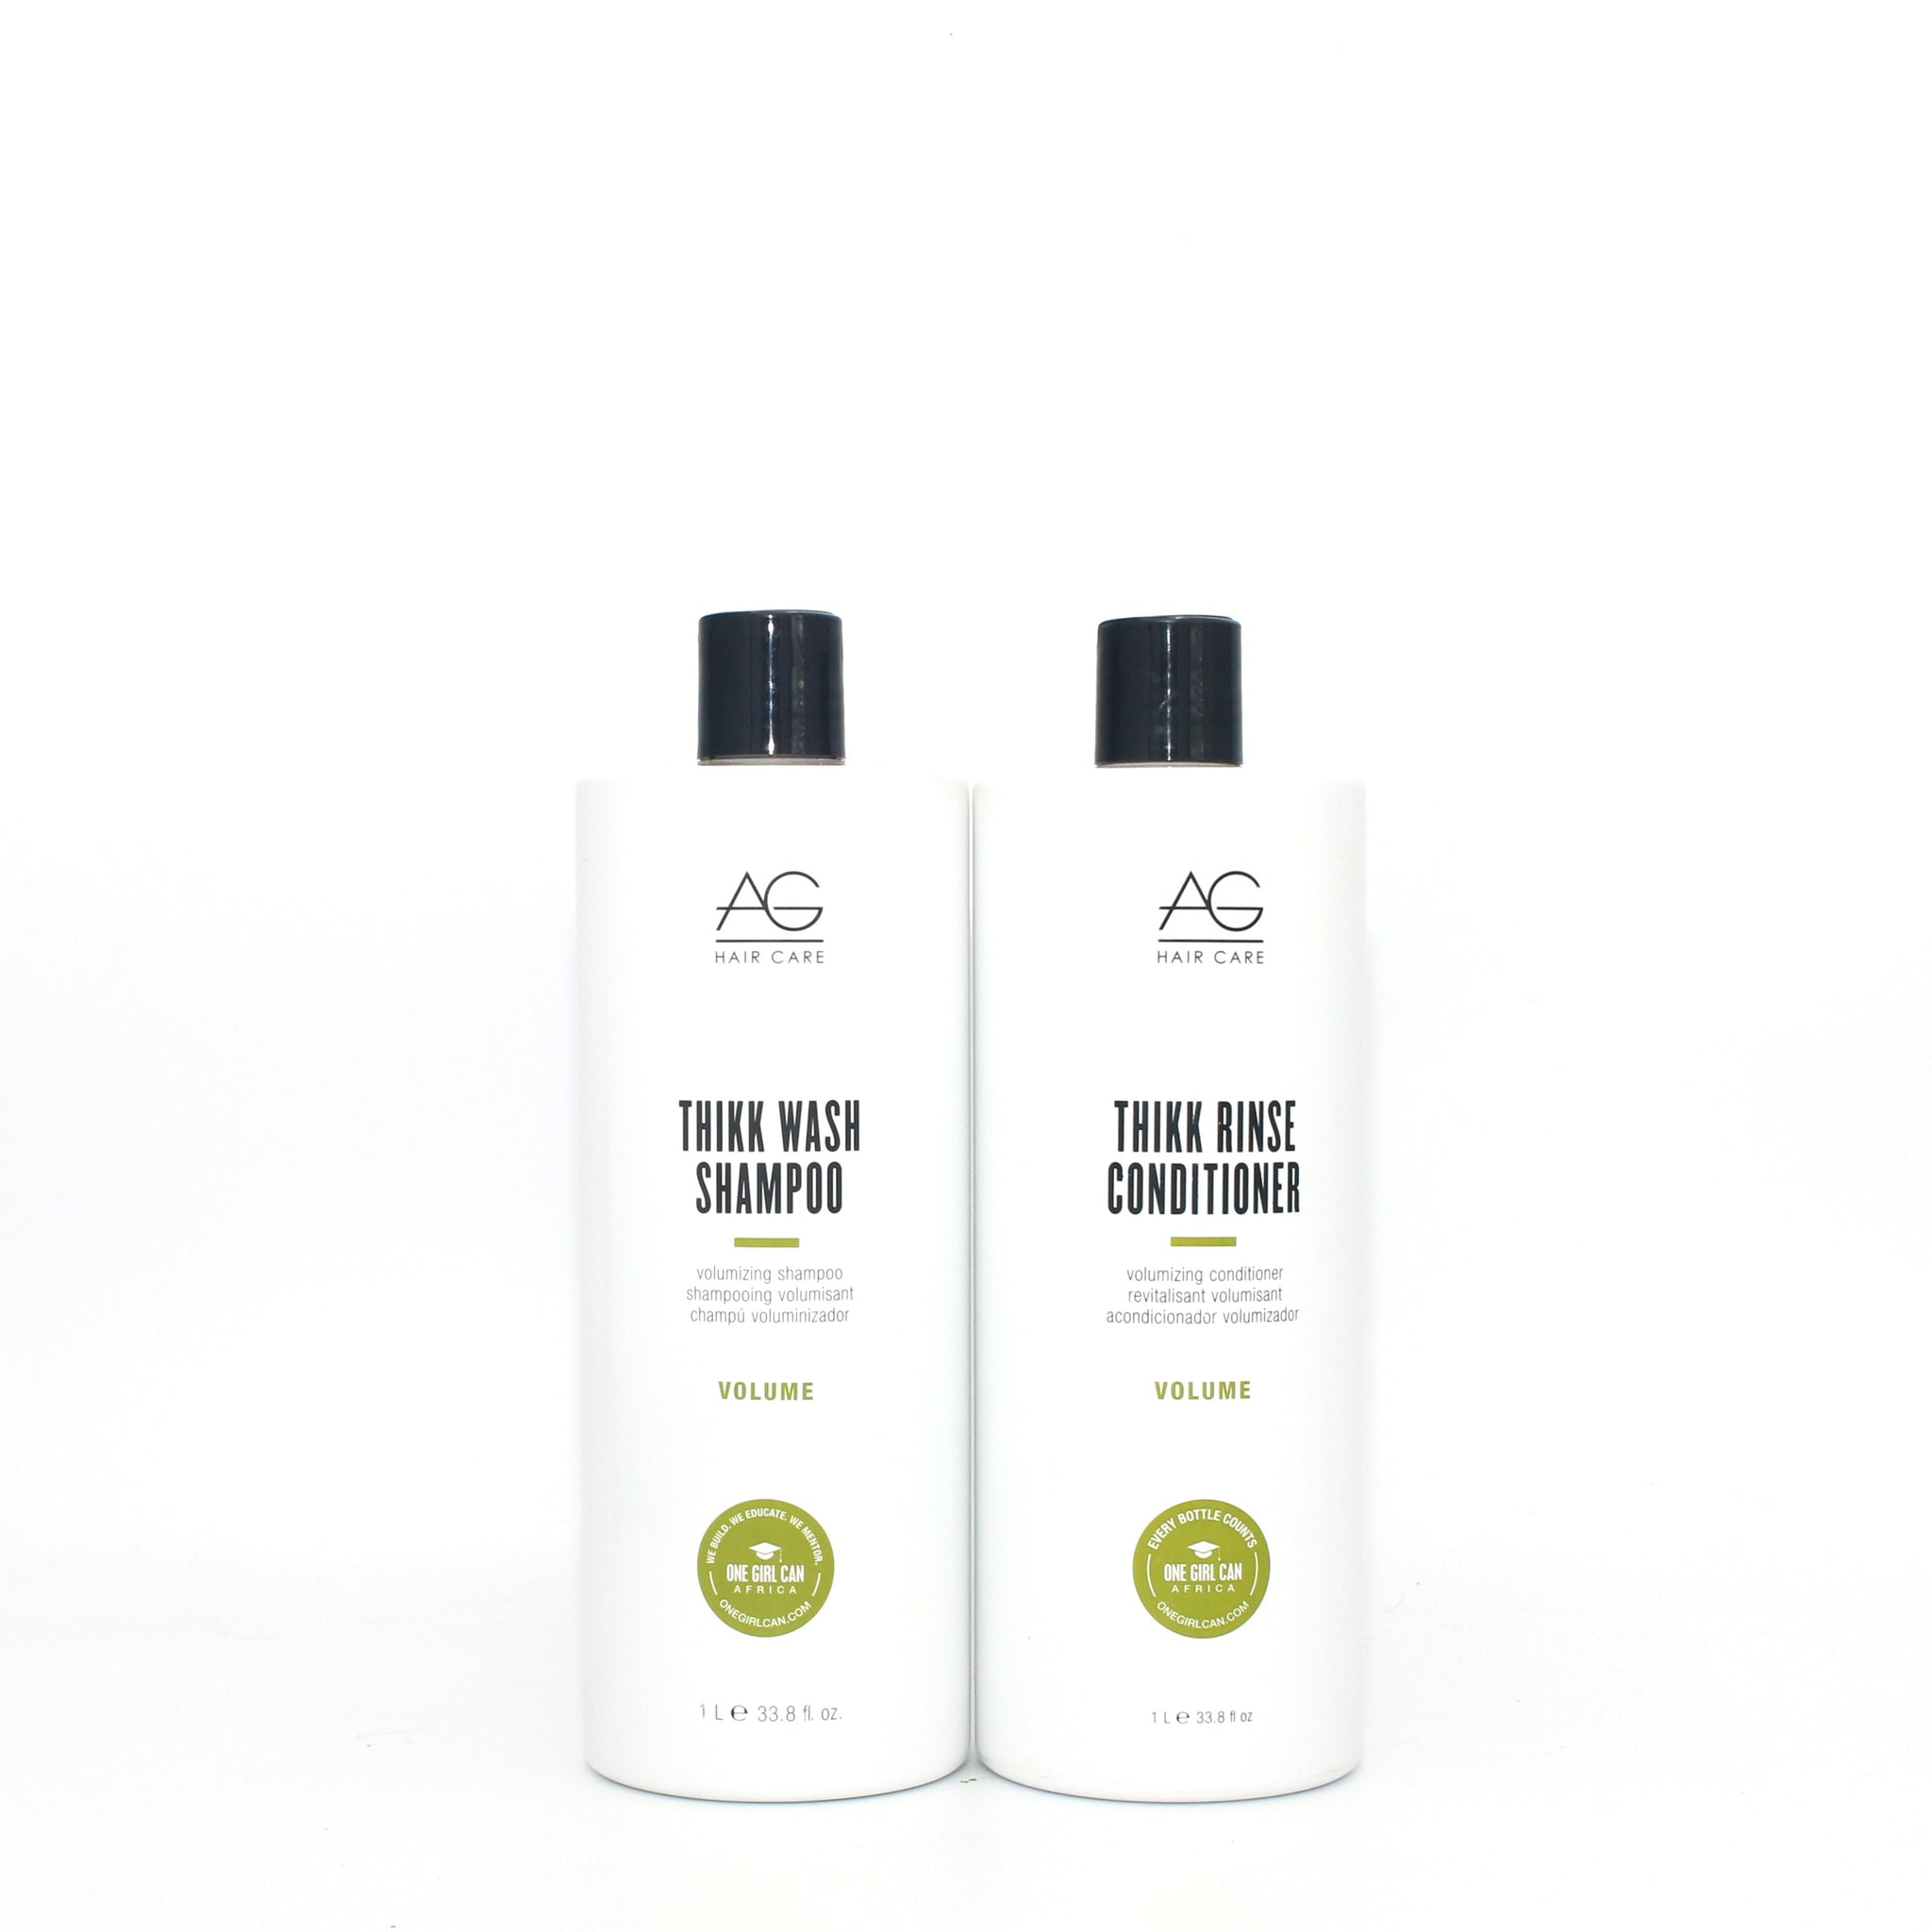 AG Think Wash Shampoo Volumizing Shampoo & Conditioner Duo